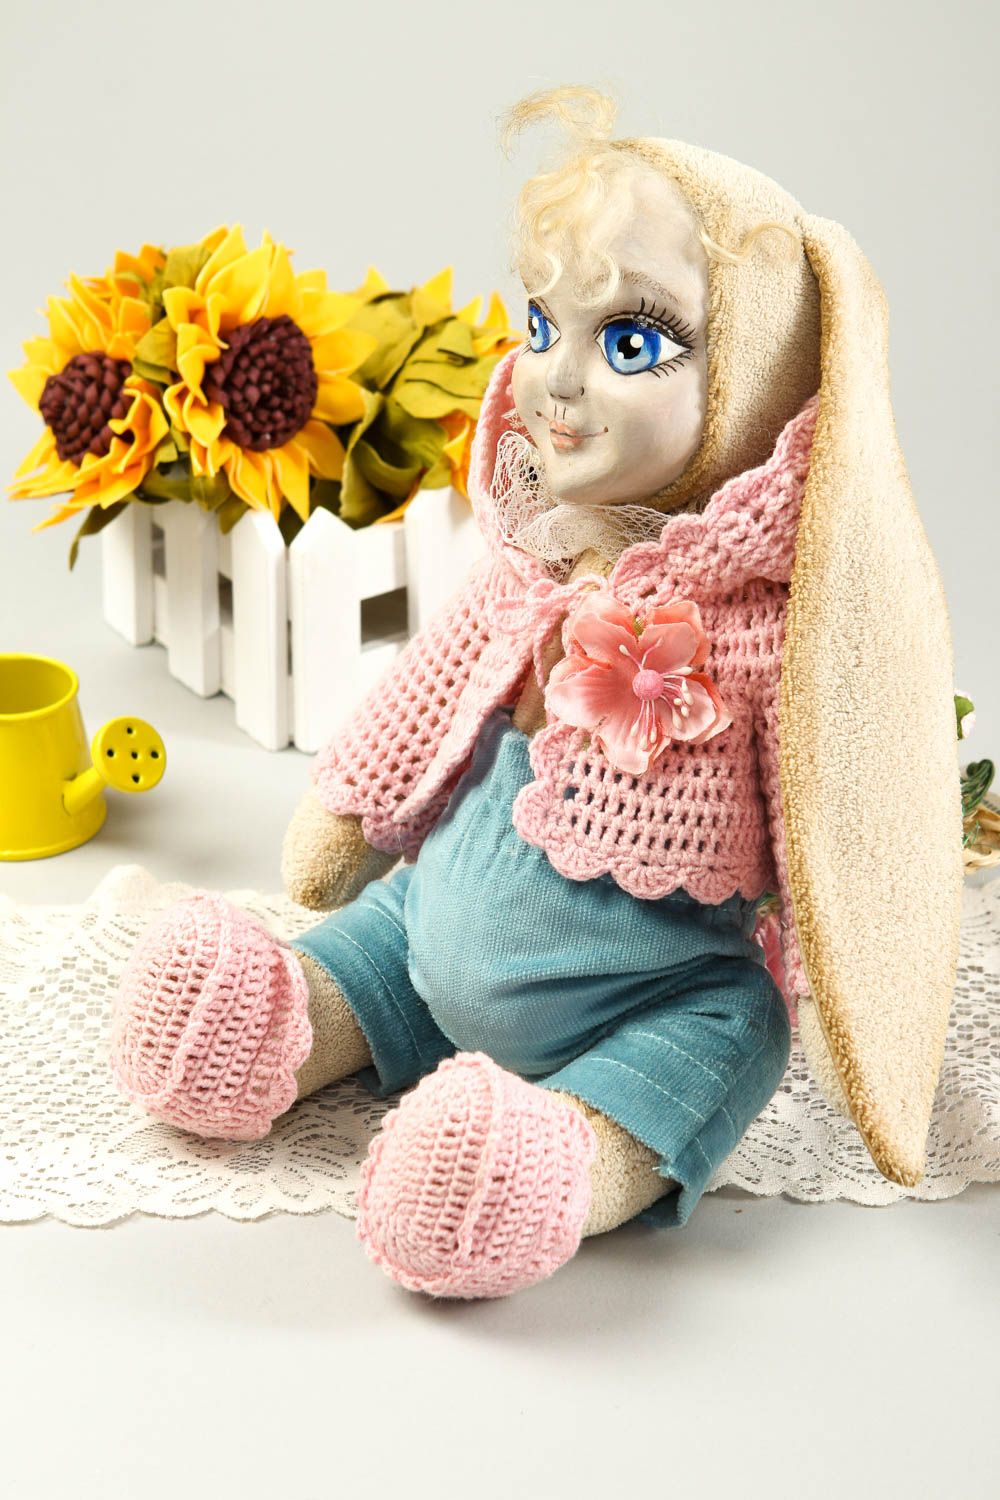 Кукла ручной работы кукла из ткани микровельвета авторская кукла с ушками фото 1